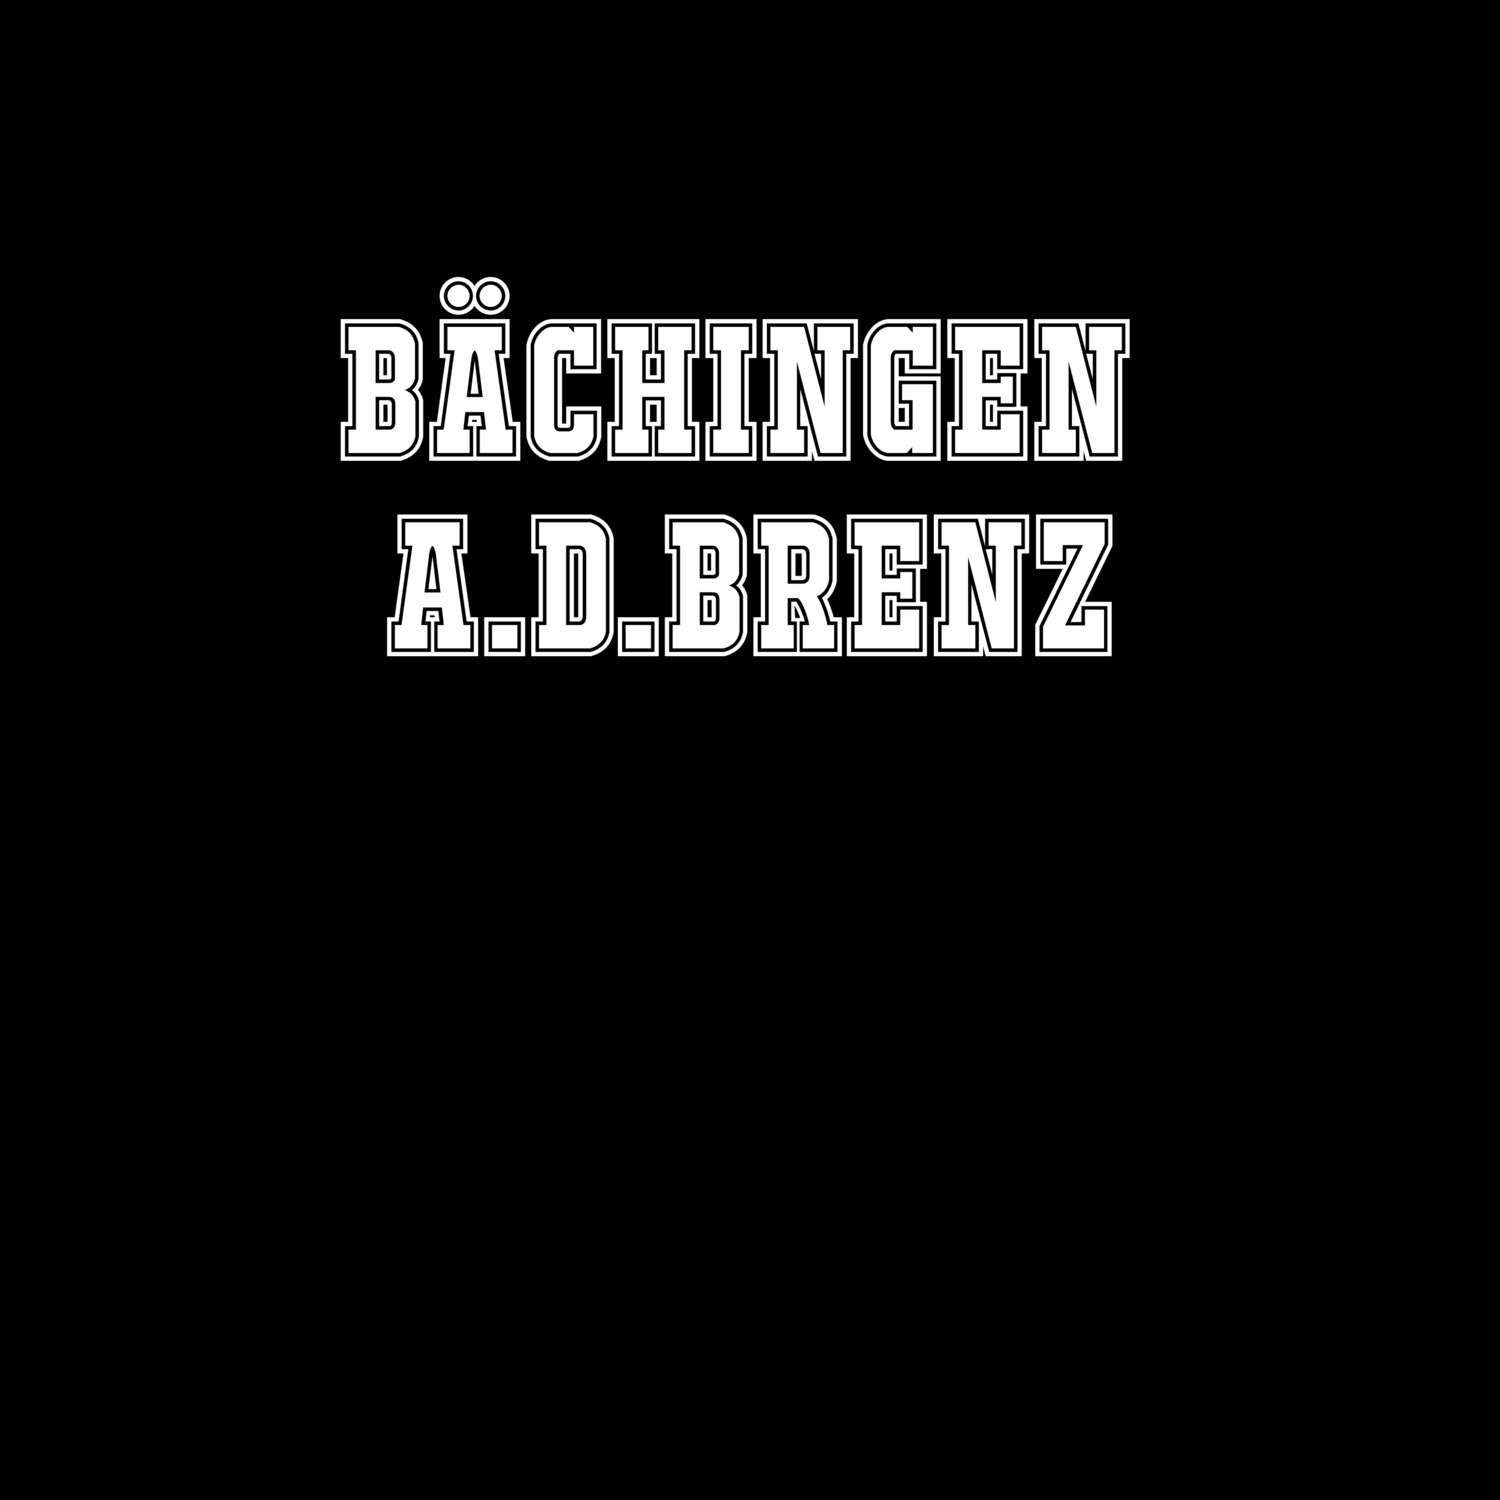 Bächingen a.d.Brenz T-Shirt »Classic«